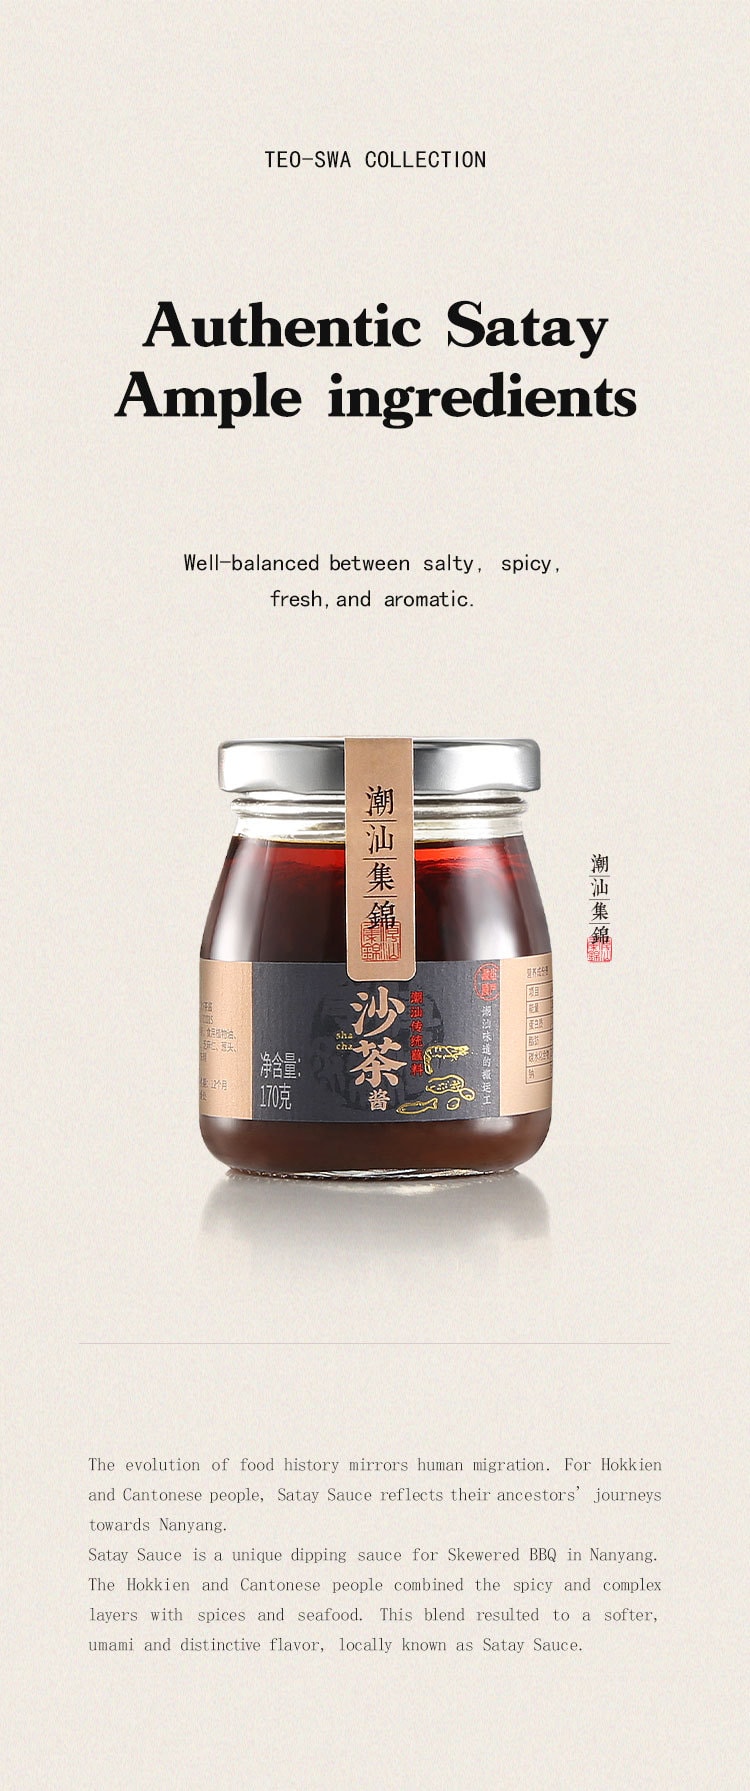 中國潮汕集錦 6瓶 沙茶醬 火鍋蘸料燒烤肉調味料 1020克